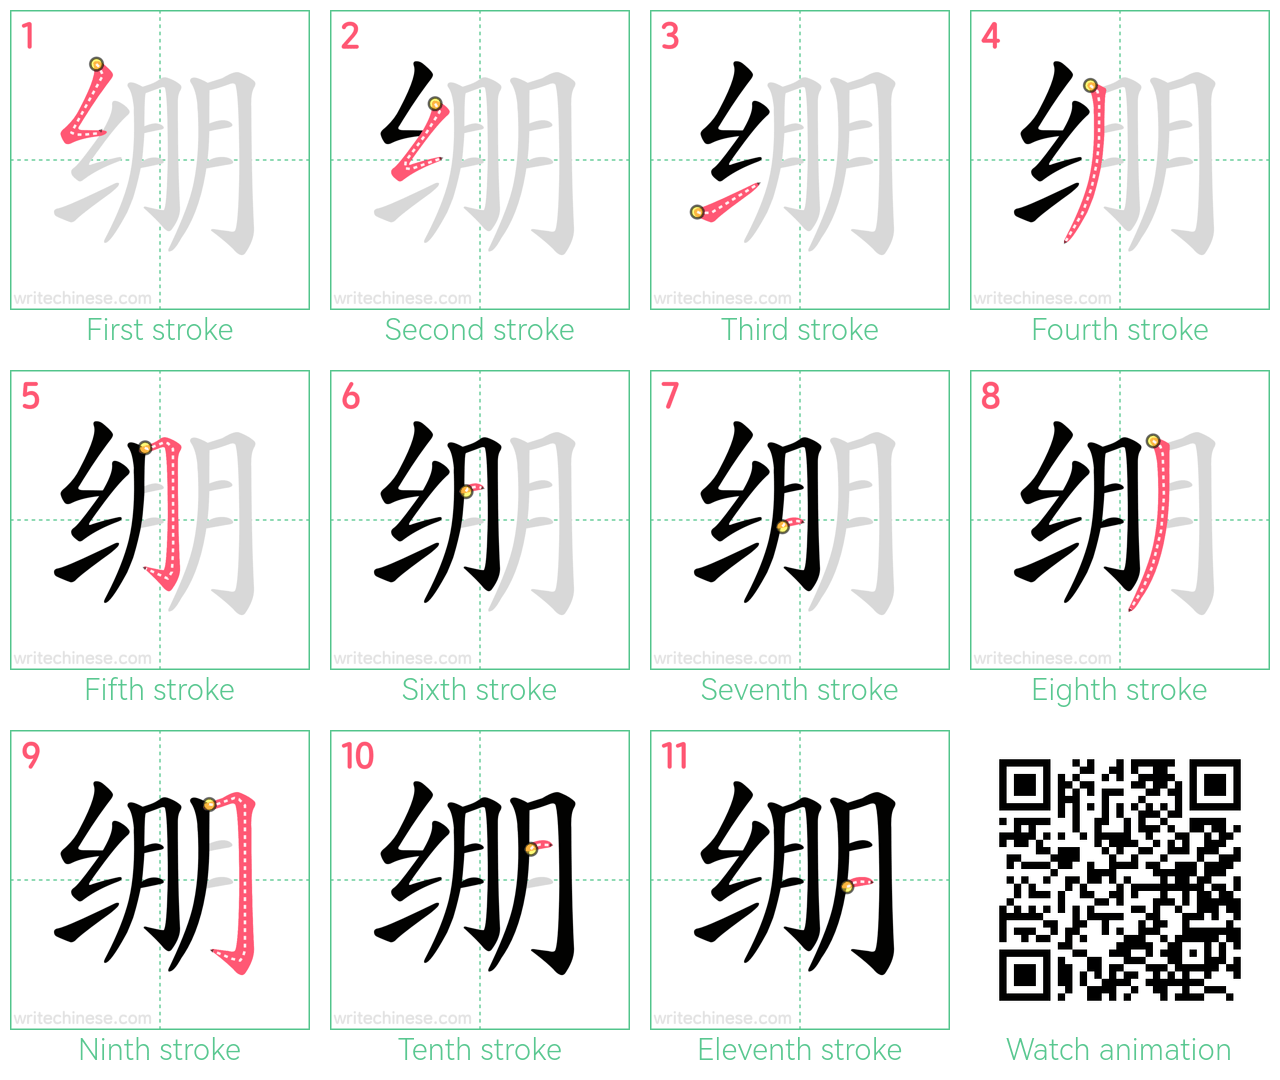 绷 step-by-step stroke order diagrams